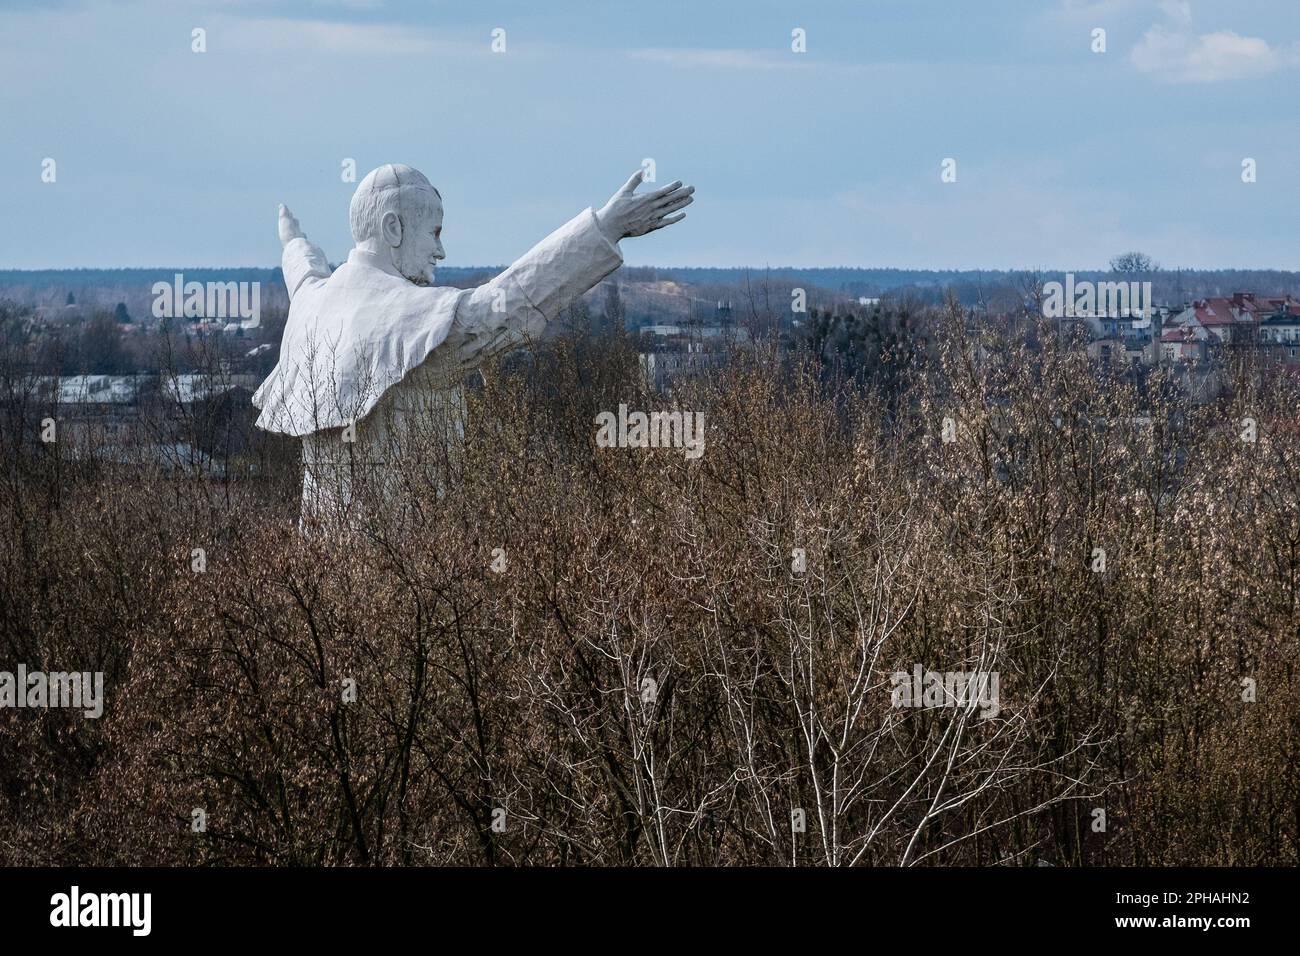 Das Denkmal für Johannes Paul II., das zwischen den Bäumen zu sehen ist. Das höchste Denkmal in Polen von Papst Johannes Paul dem Zweiten. Das Denkmal wurde 2013 erbaut und in Czestochowa platziert. Heute ist es vergessen. Keine Pilger kommen, um es zu sehen. Es bleibt allein unter den Bäumen. Stockfoto